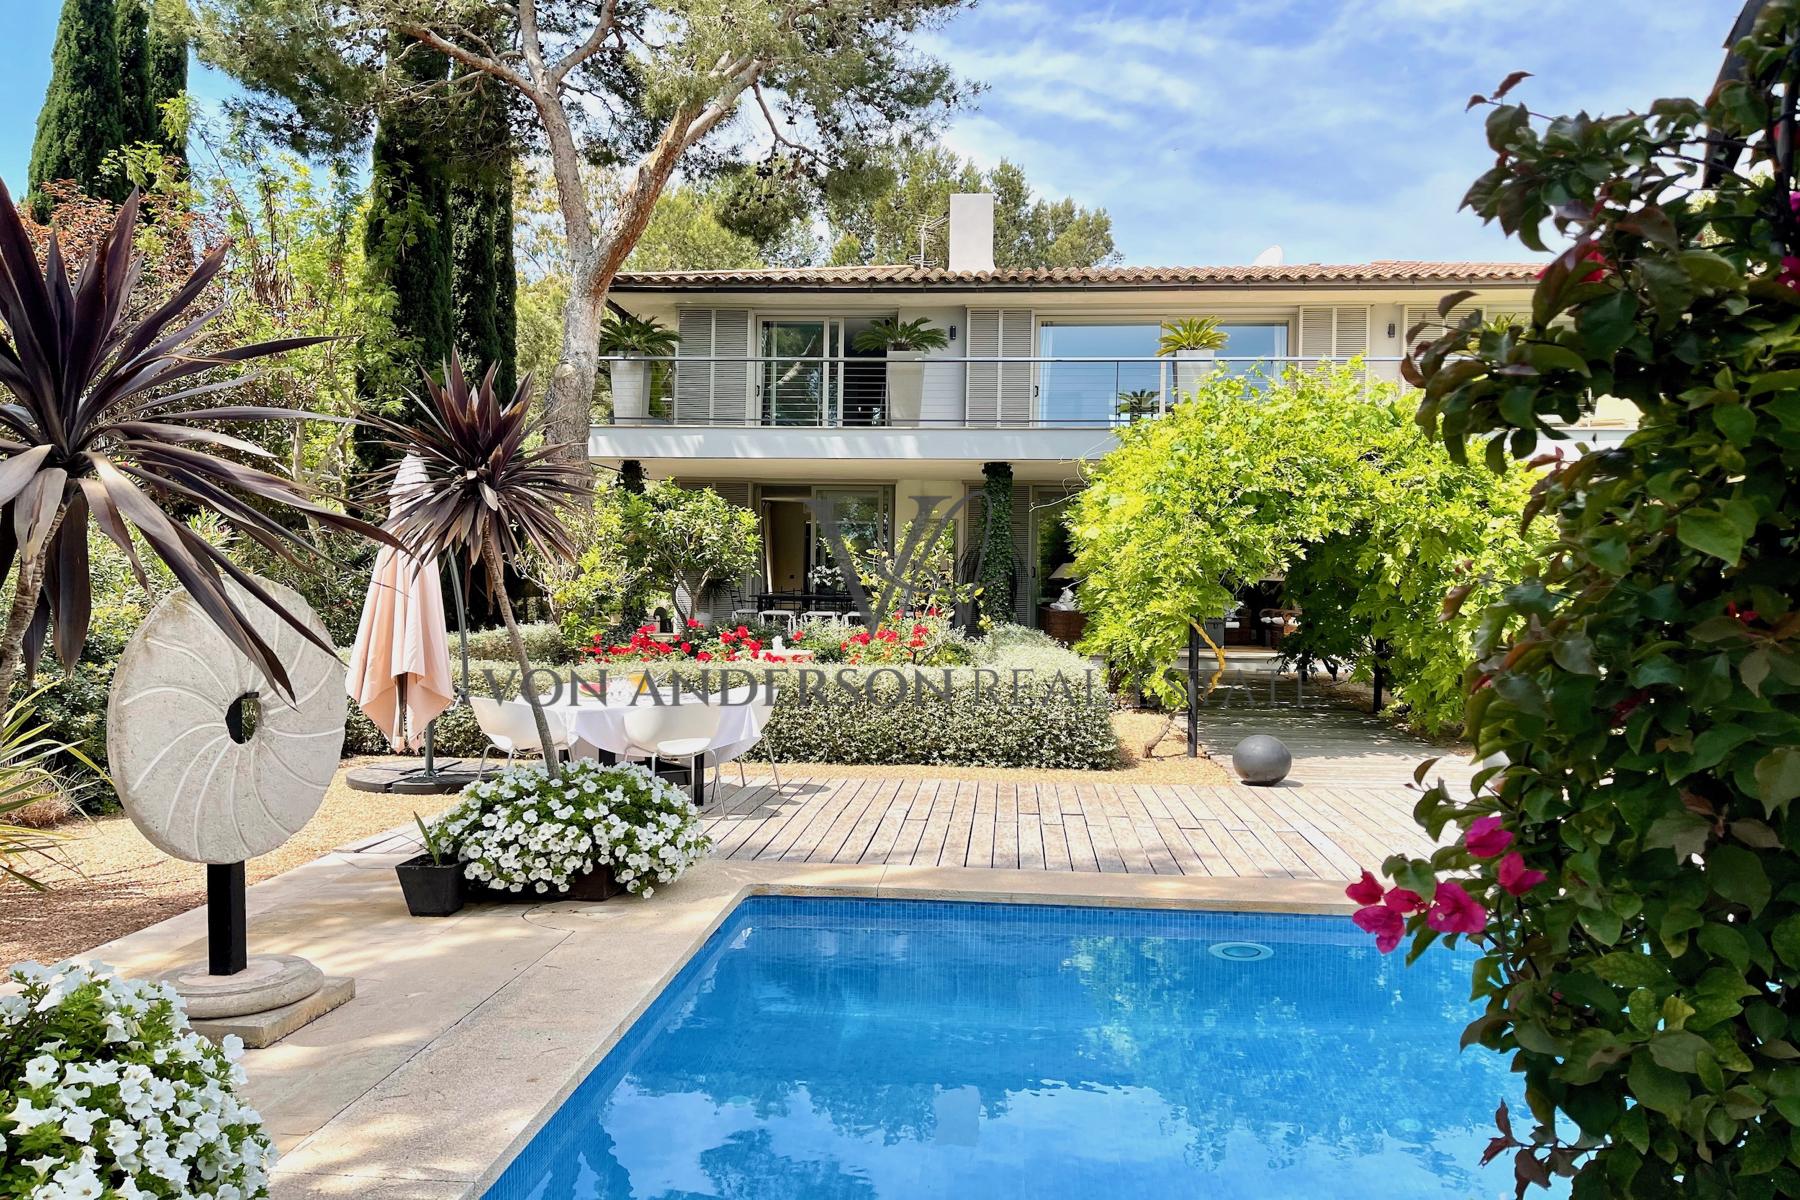 Charming Villa Residence Located in Exclusive Sol de Mallorca, ref. VA1017, for sale in Mallorca with Von Anderson Real Estate